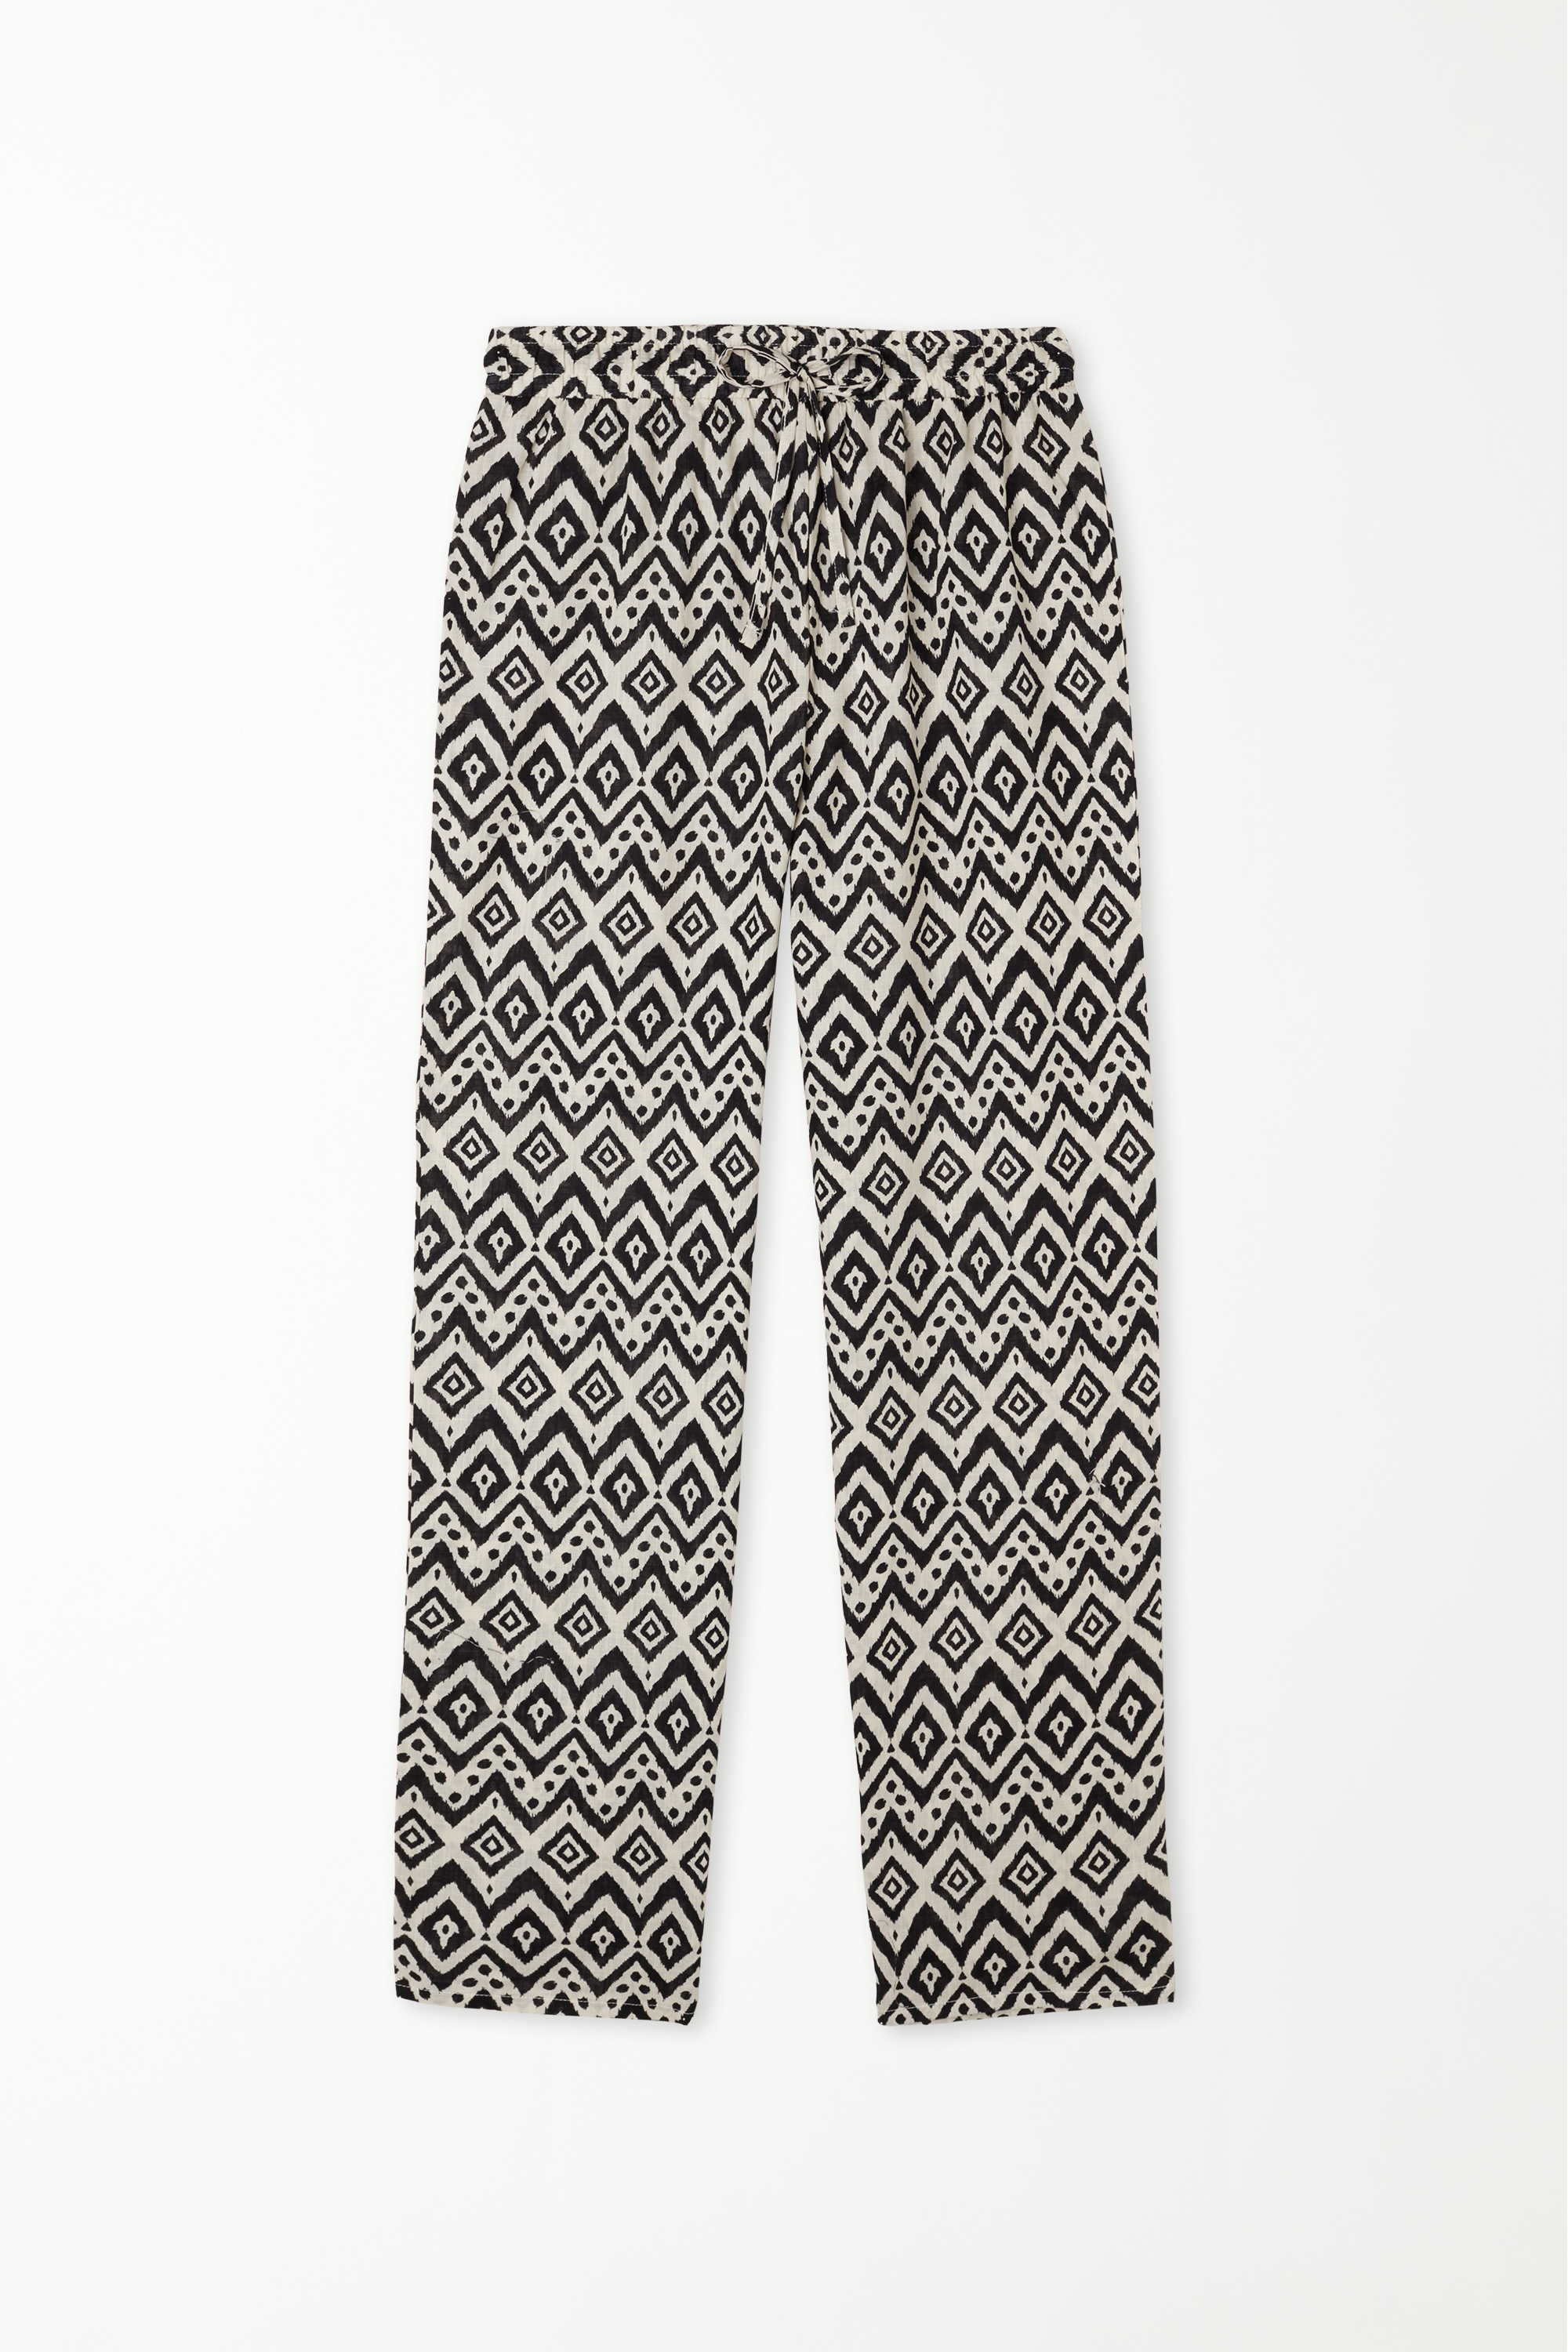 Pantalon 100 % Coton Ultra-léger